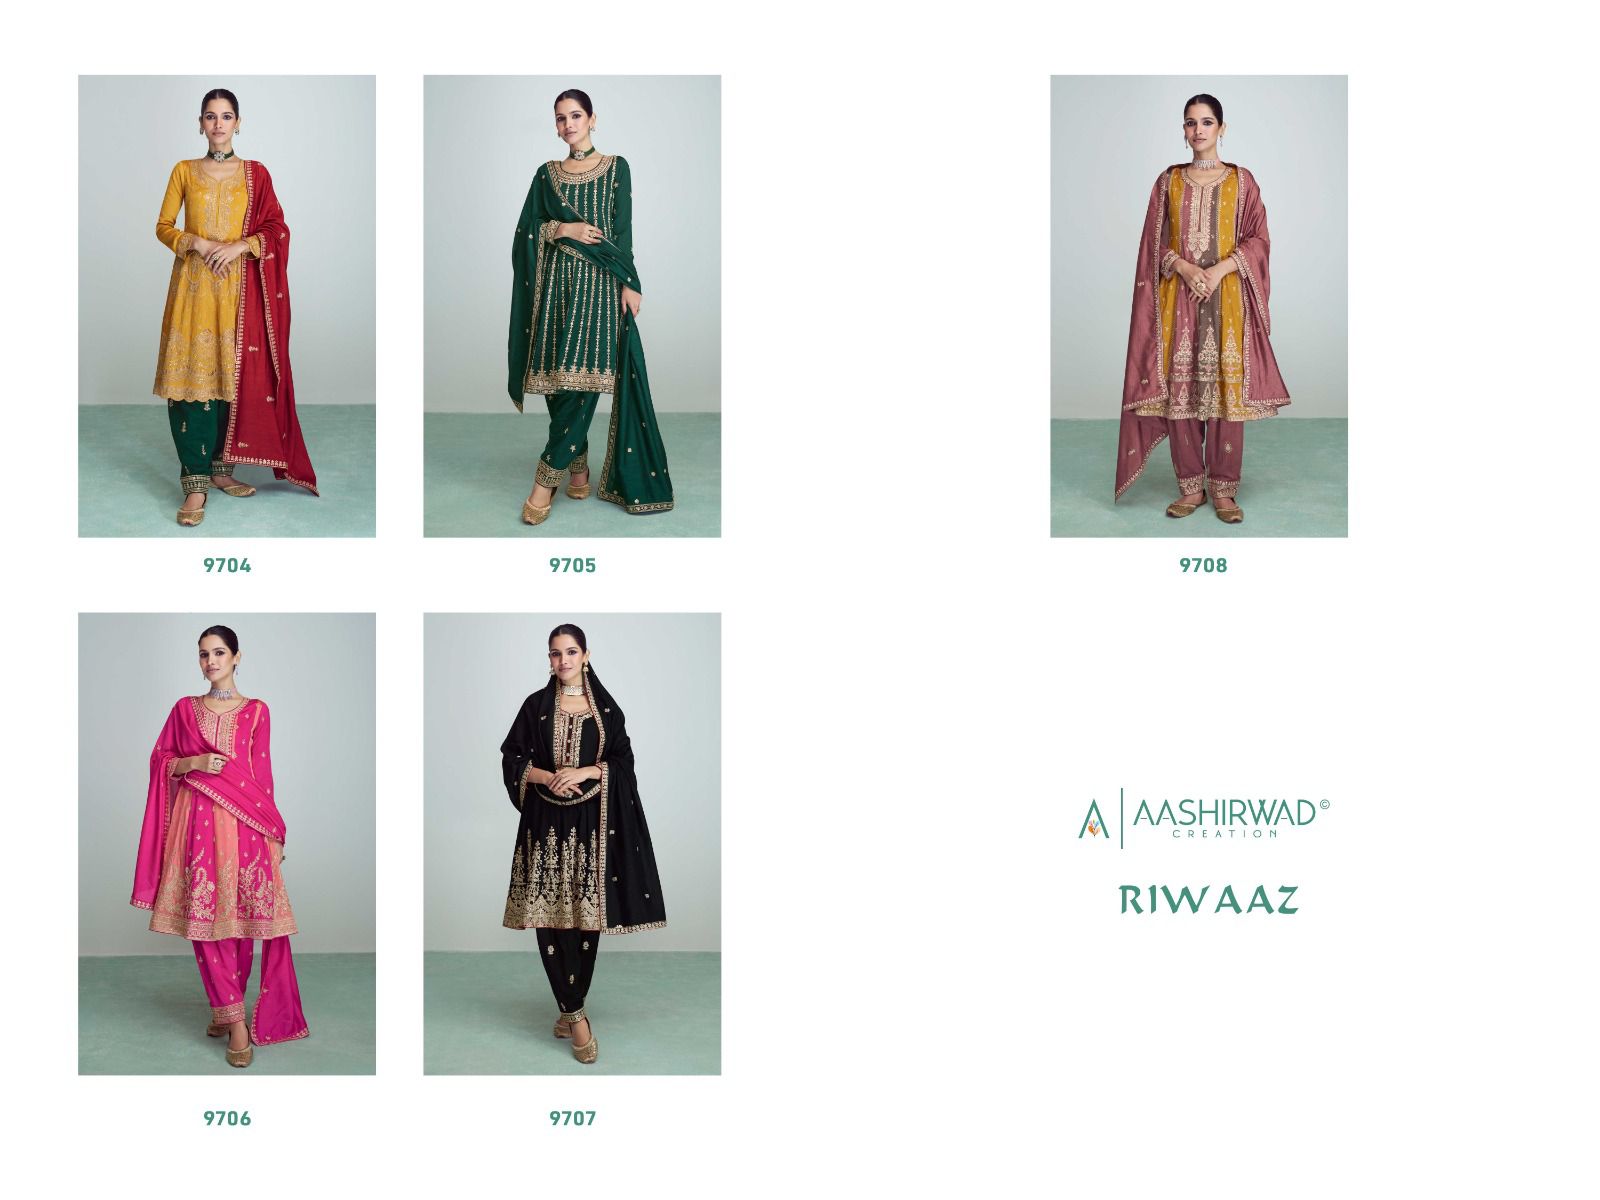 Aashirwad Riwaaz collection 1